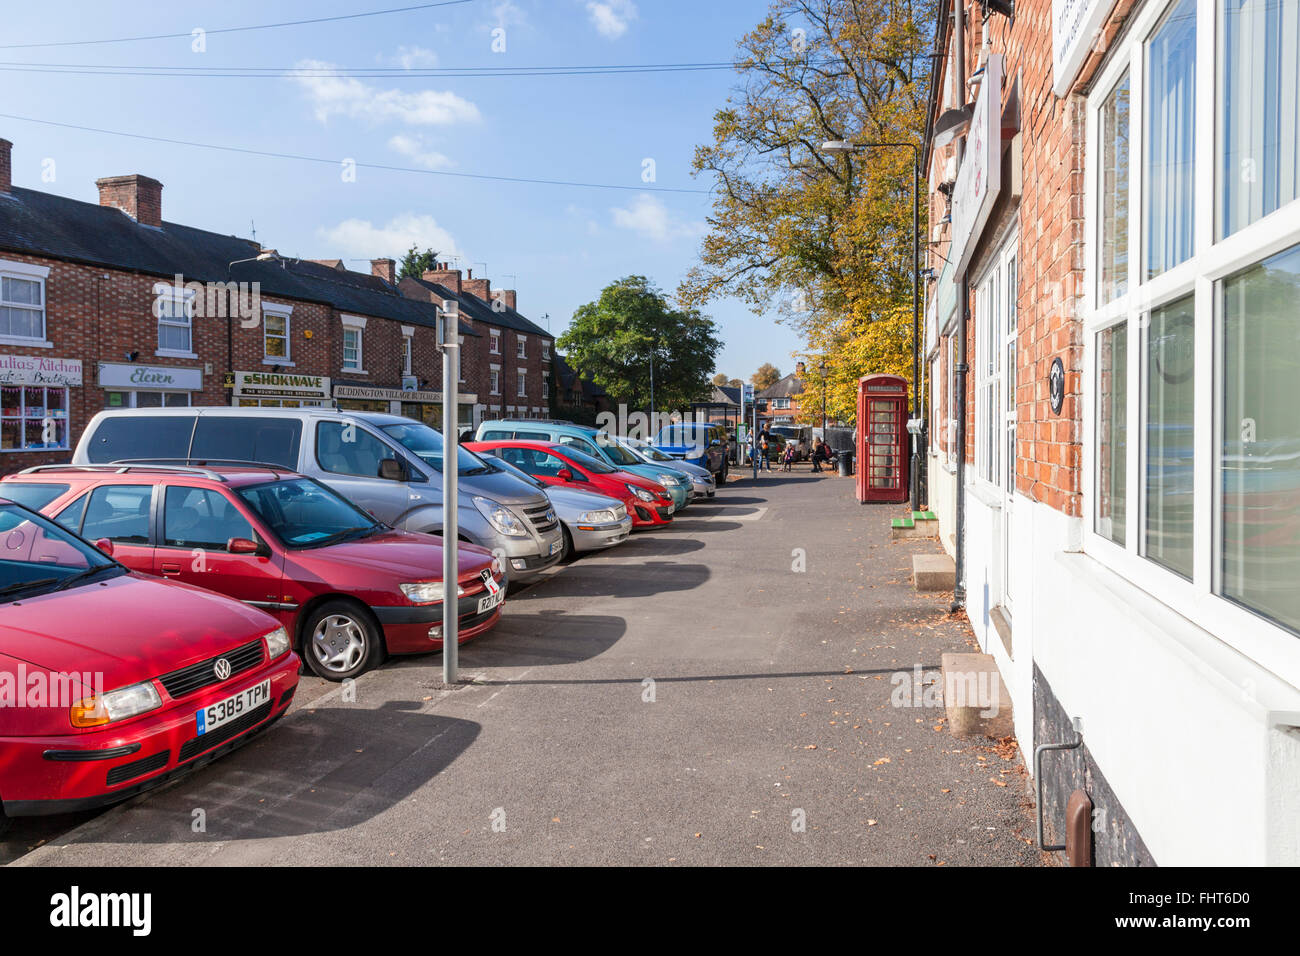 Coches aparcados en una calle lateral en la parte delantera del vehículo hacia la acera, Ruddington, Nottinghamshire, Inglaterra, Reino Unido. Foto de stock